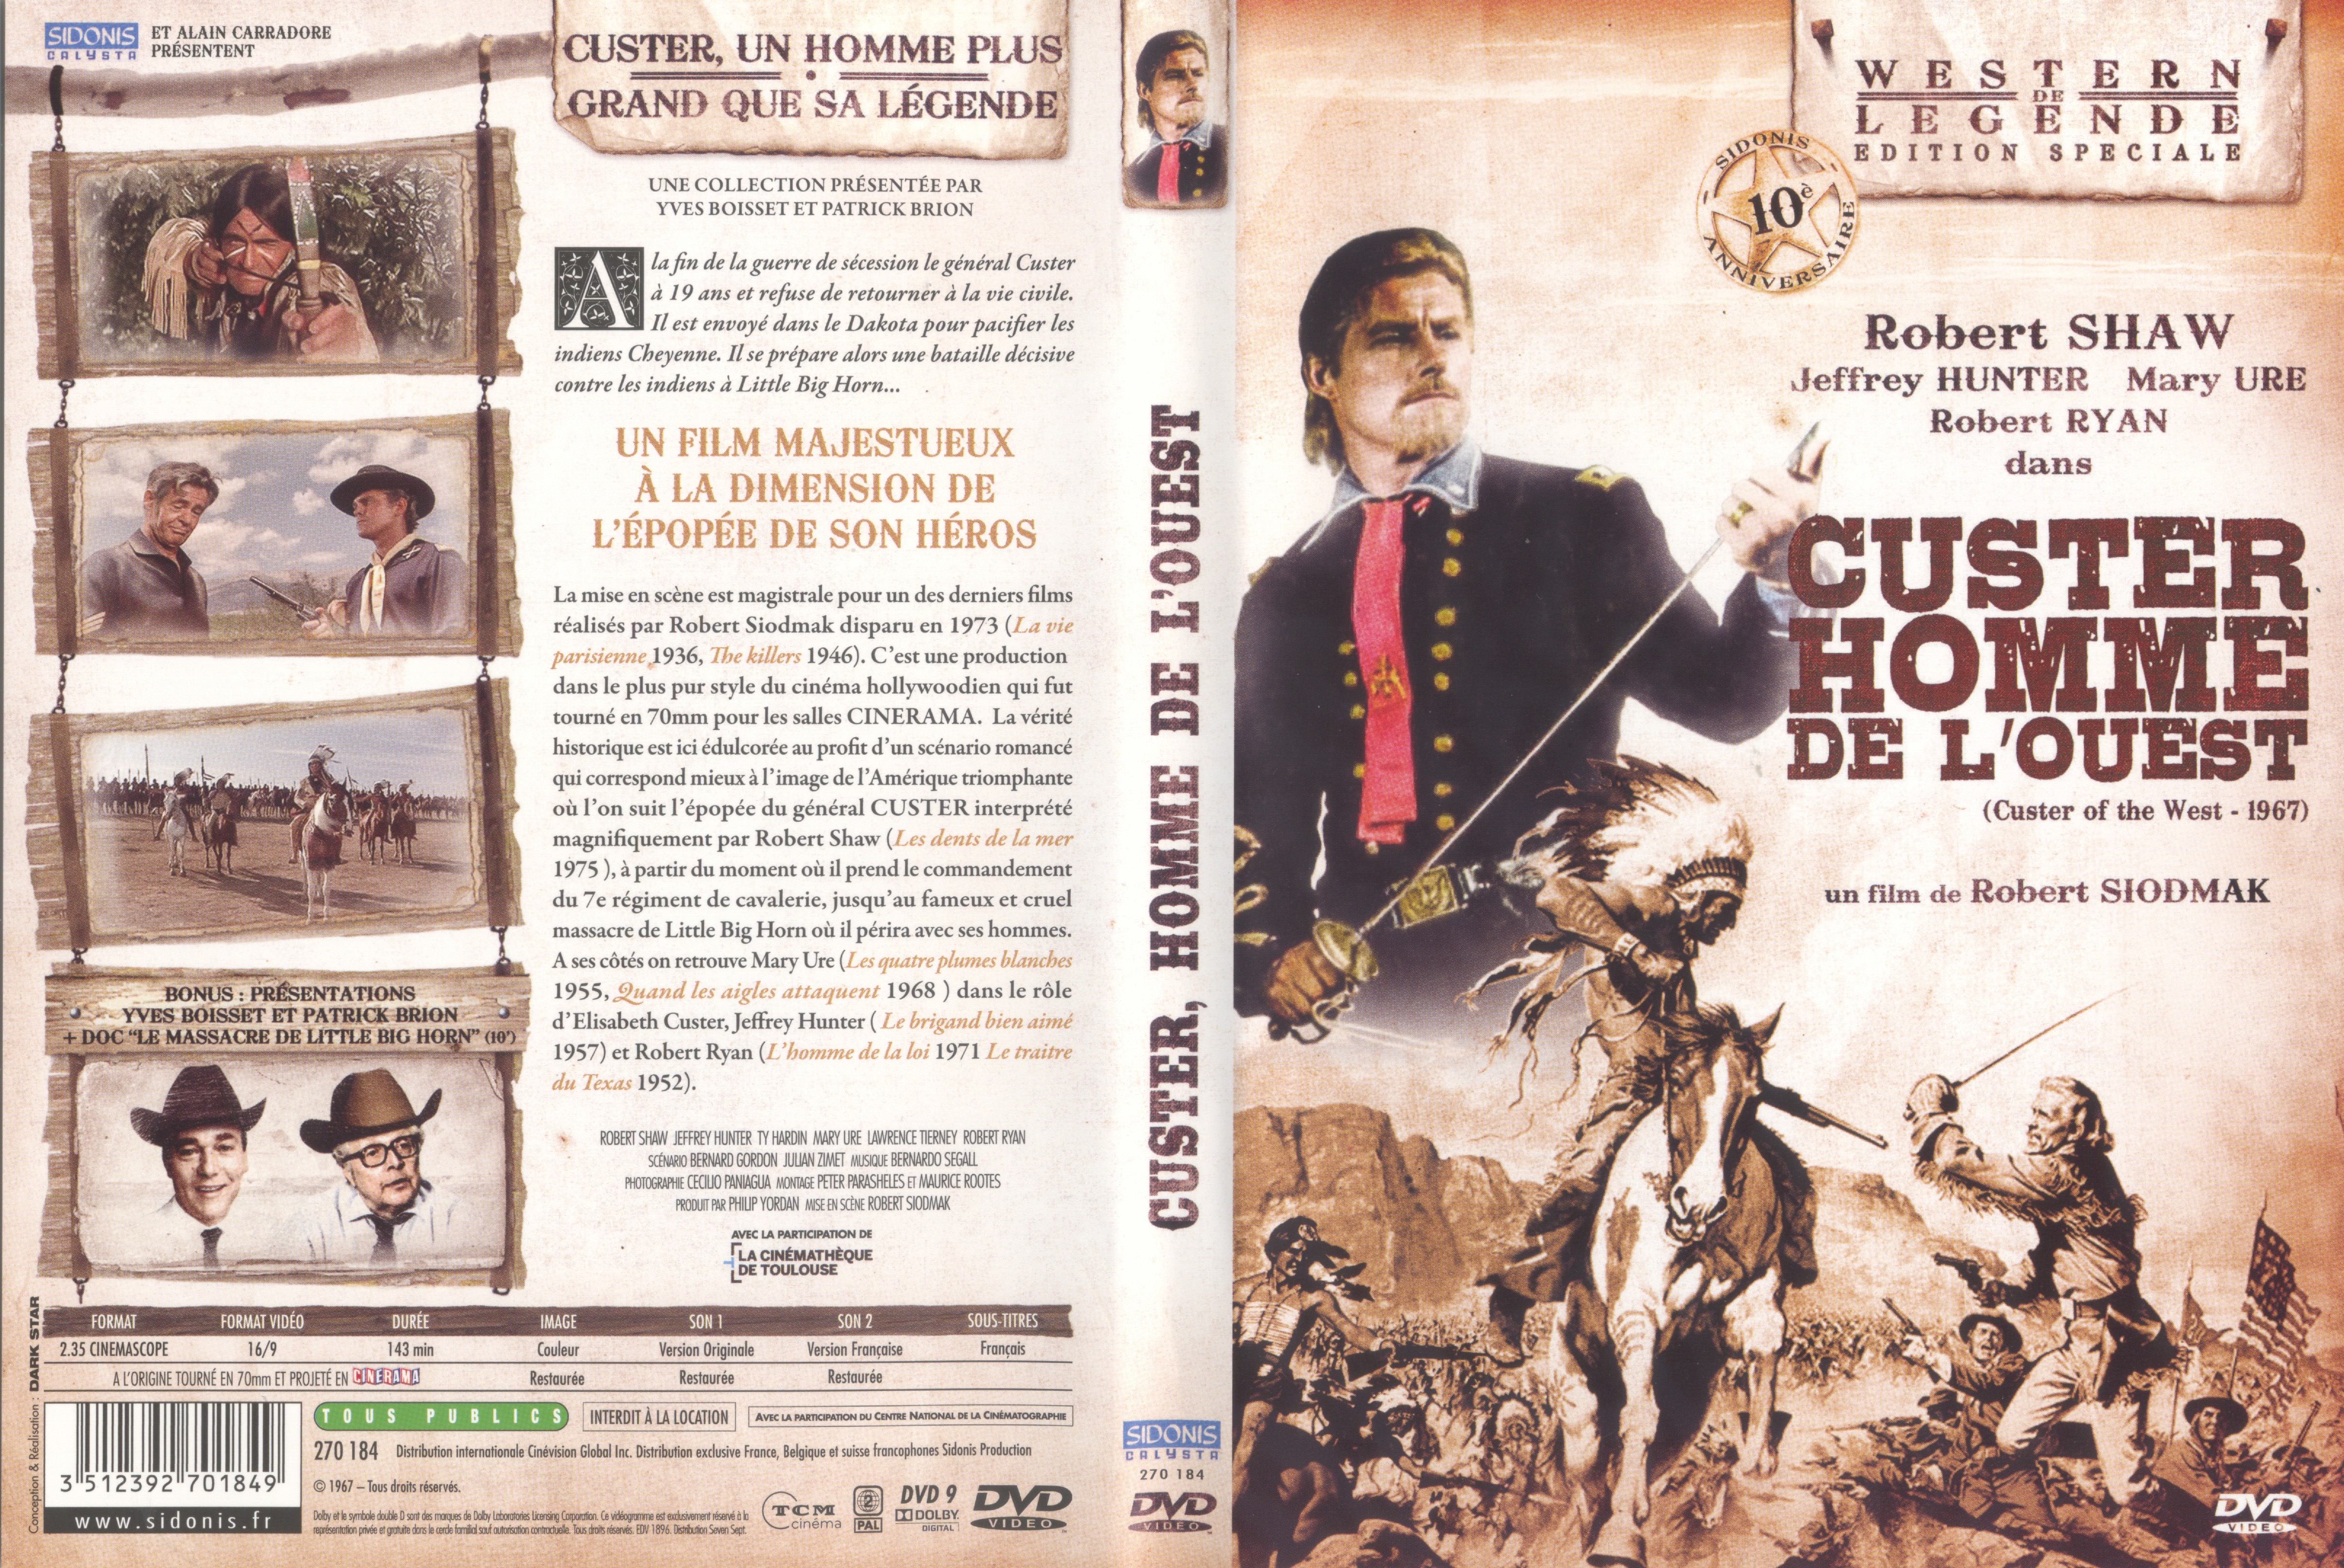 Jaquette DVD Custer homme de l